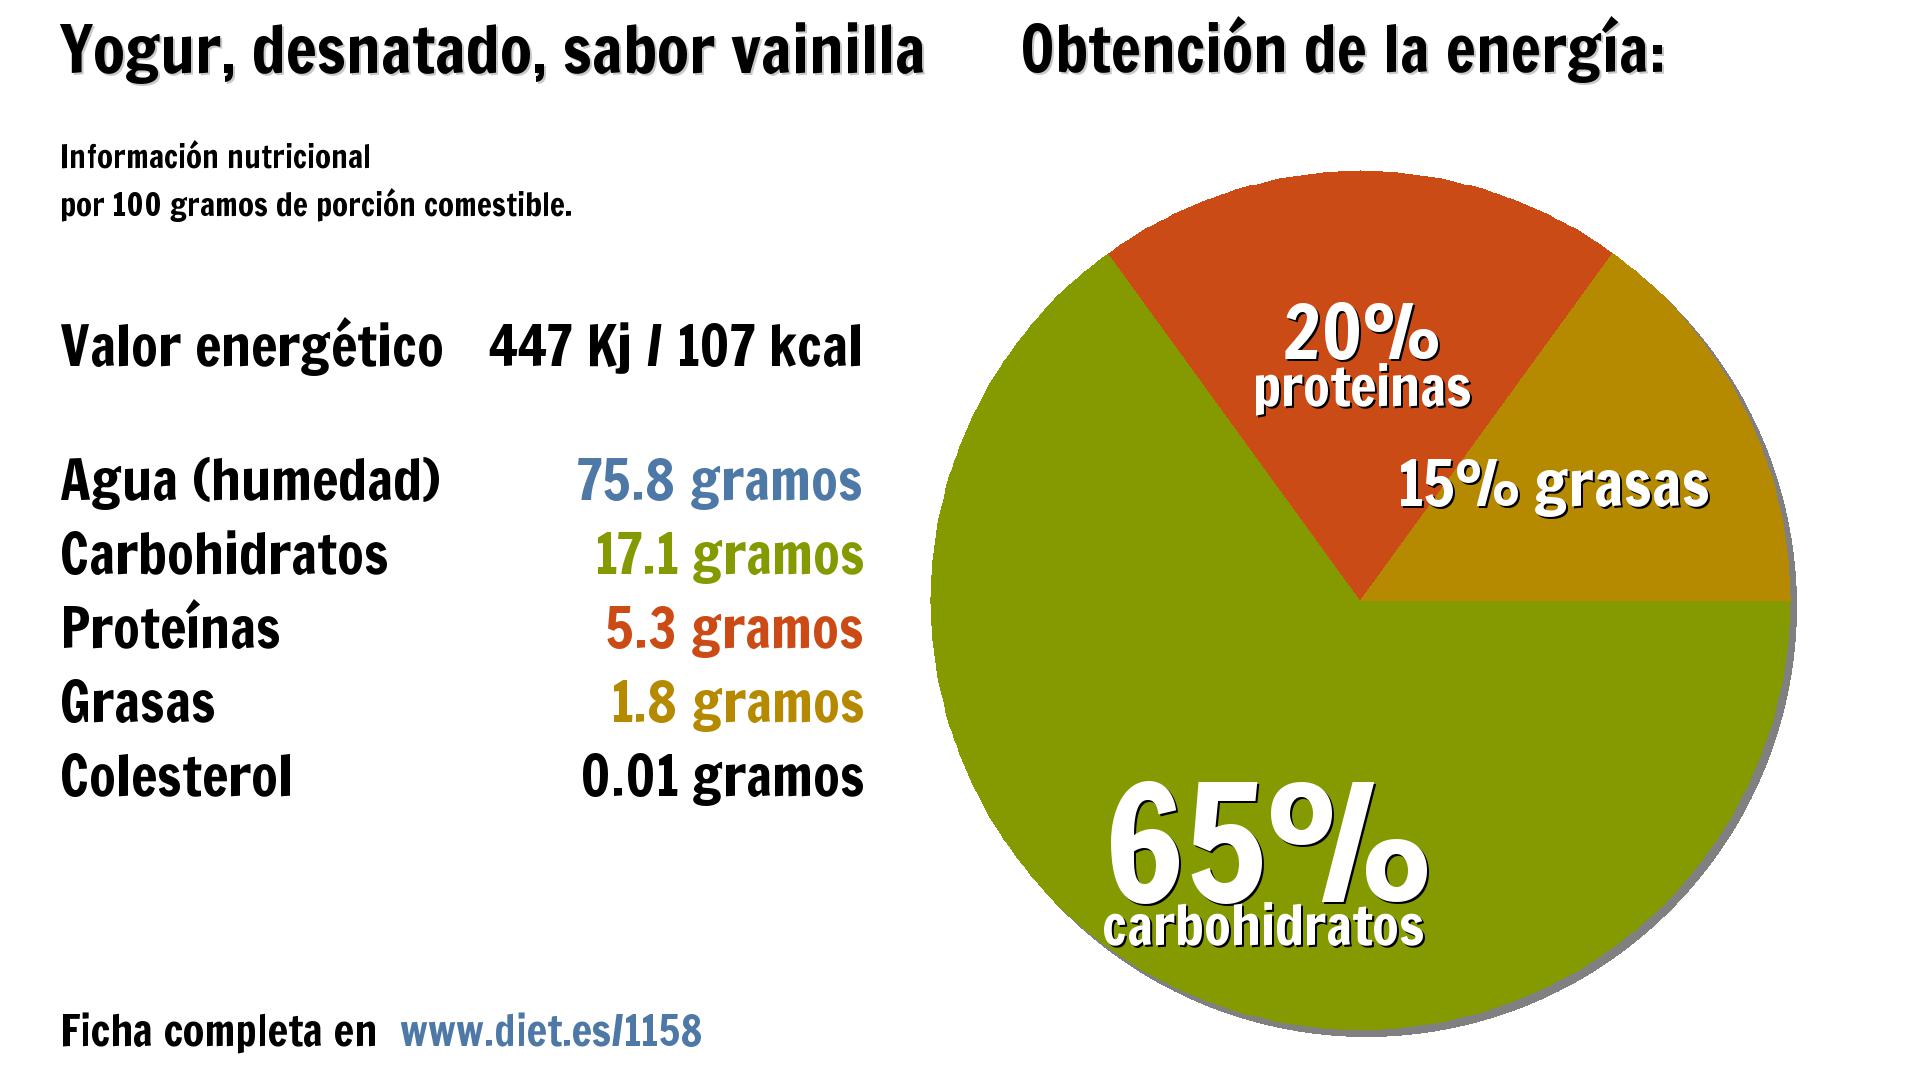 Yogur, desnatado, sabor vainilla: energía 447 Kj, agua 76 g., carbohidratos 17 g., proteínas 5 g. y grasas 2 g.